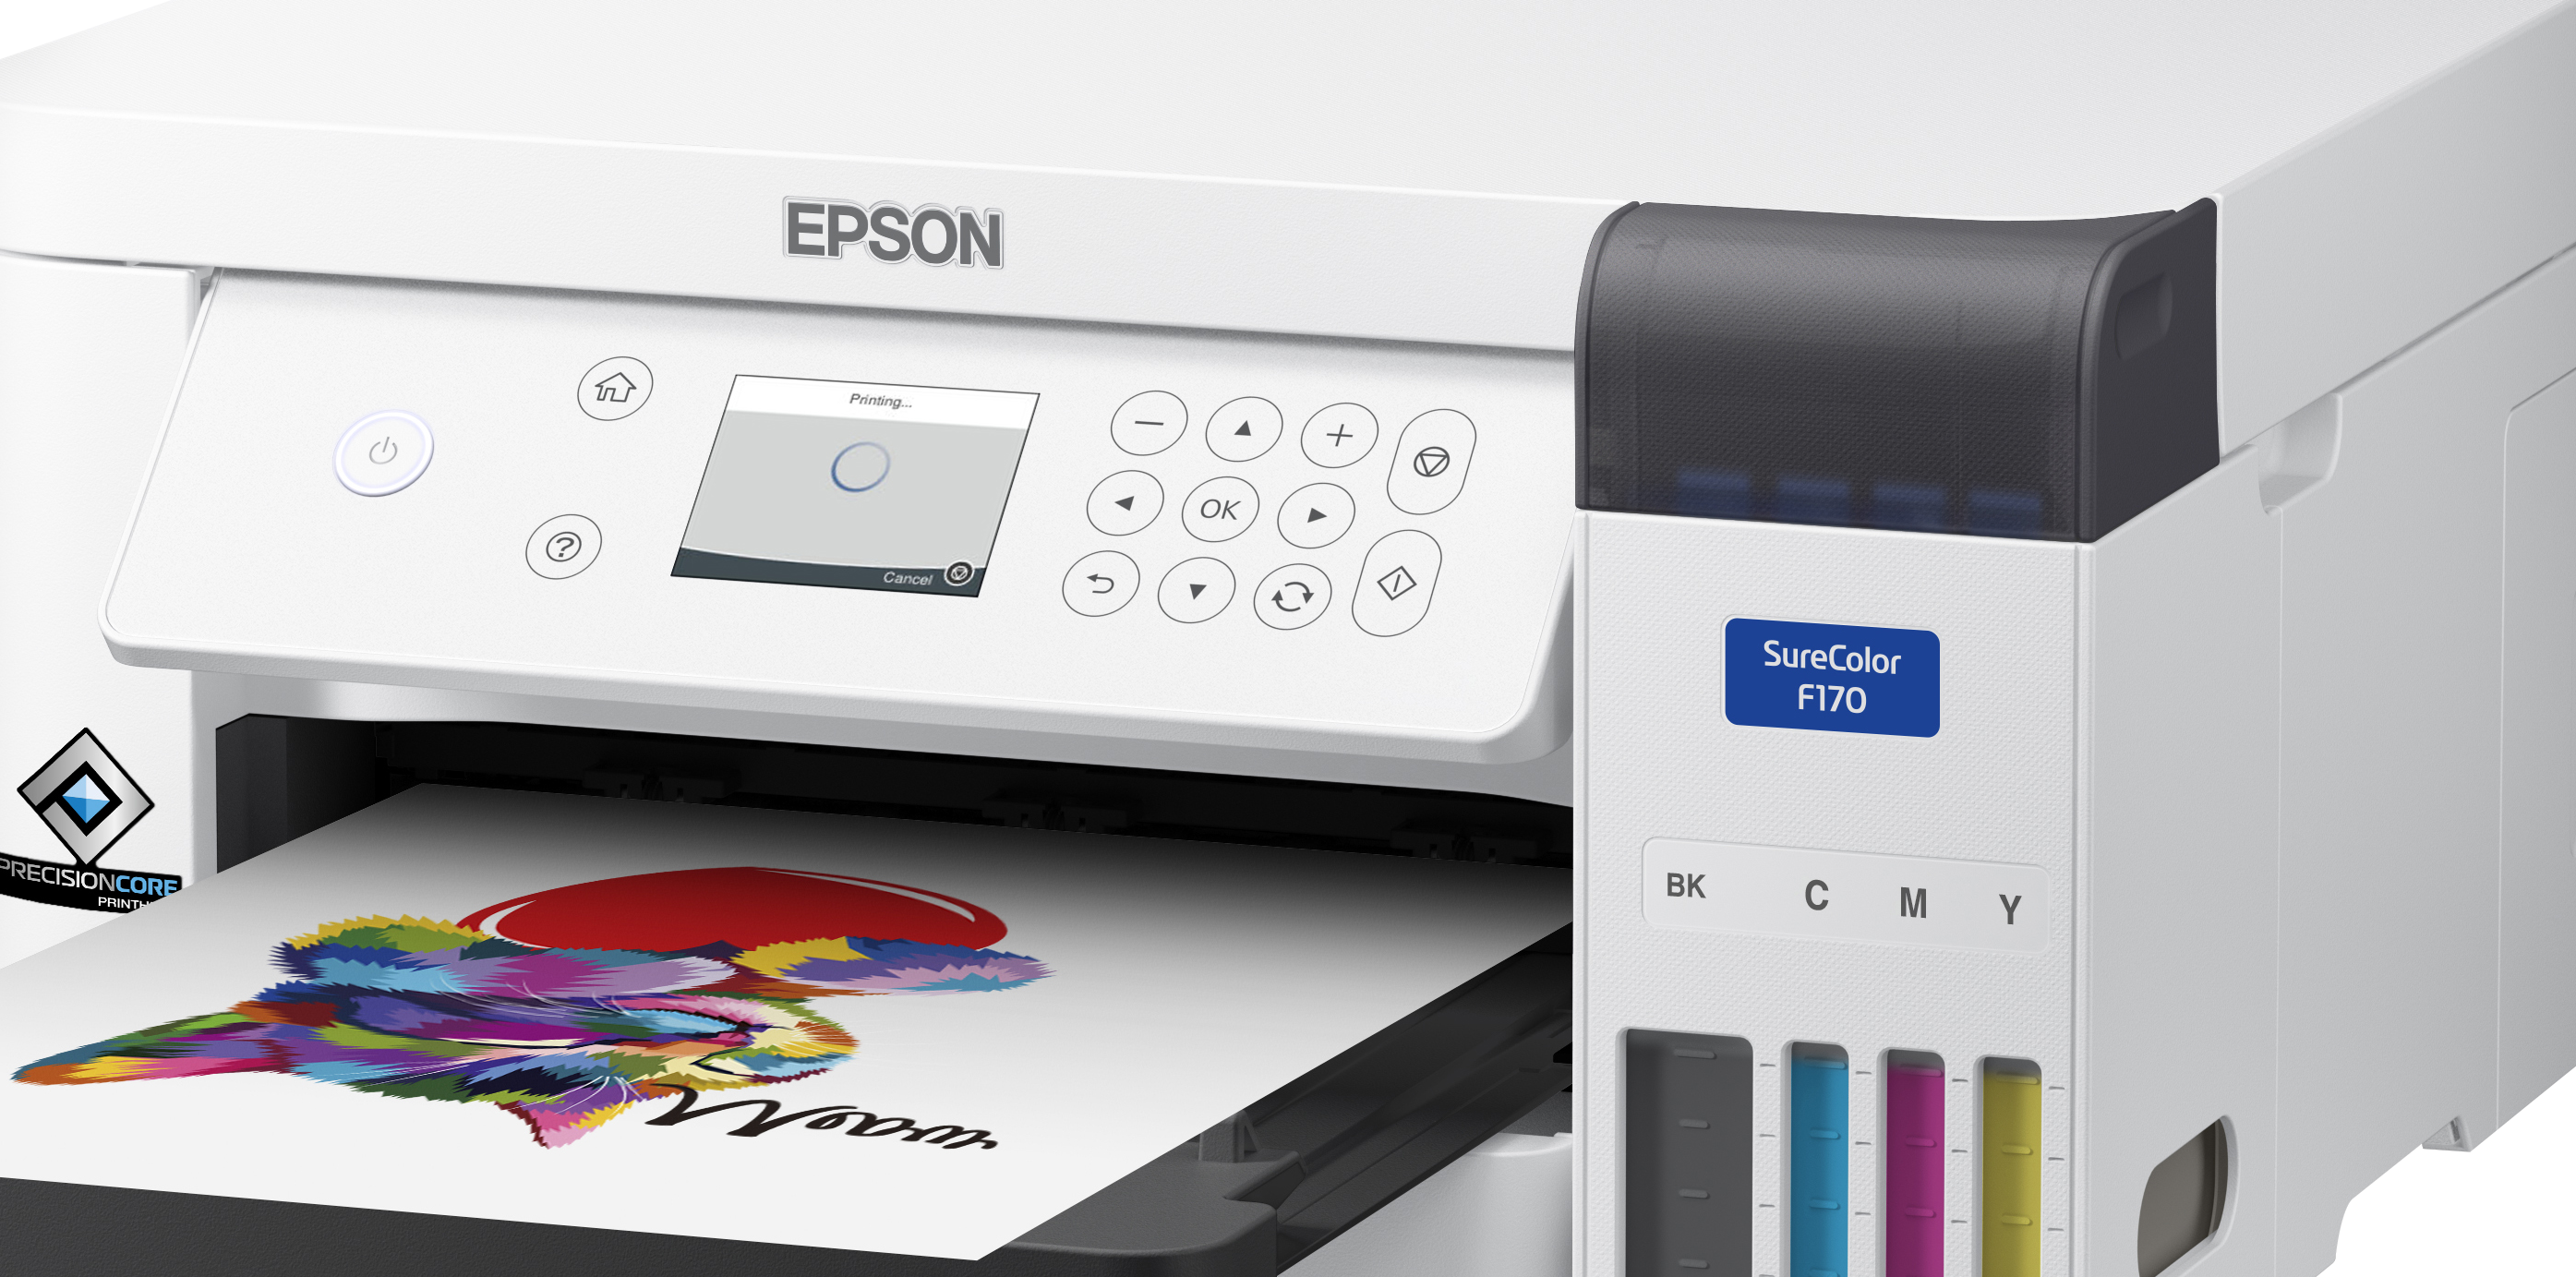 Características - Impresora Epson F170